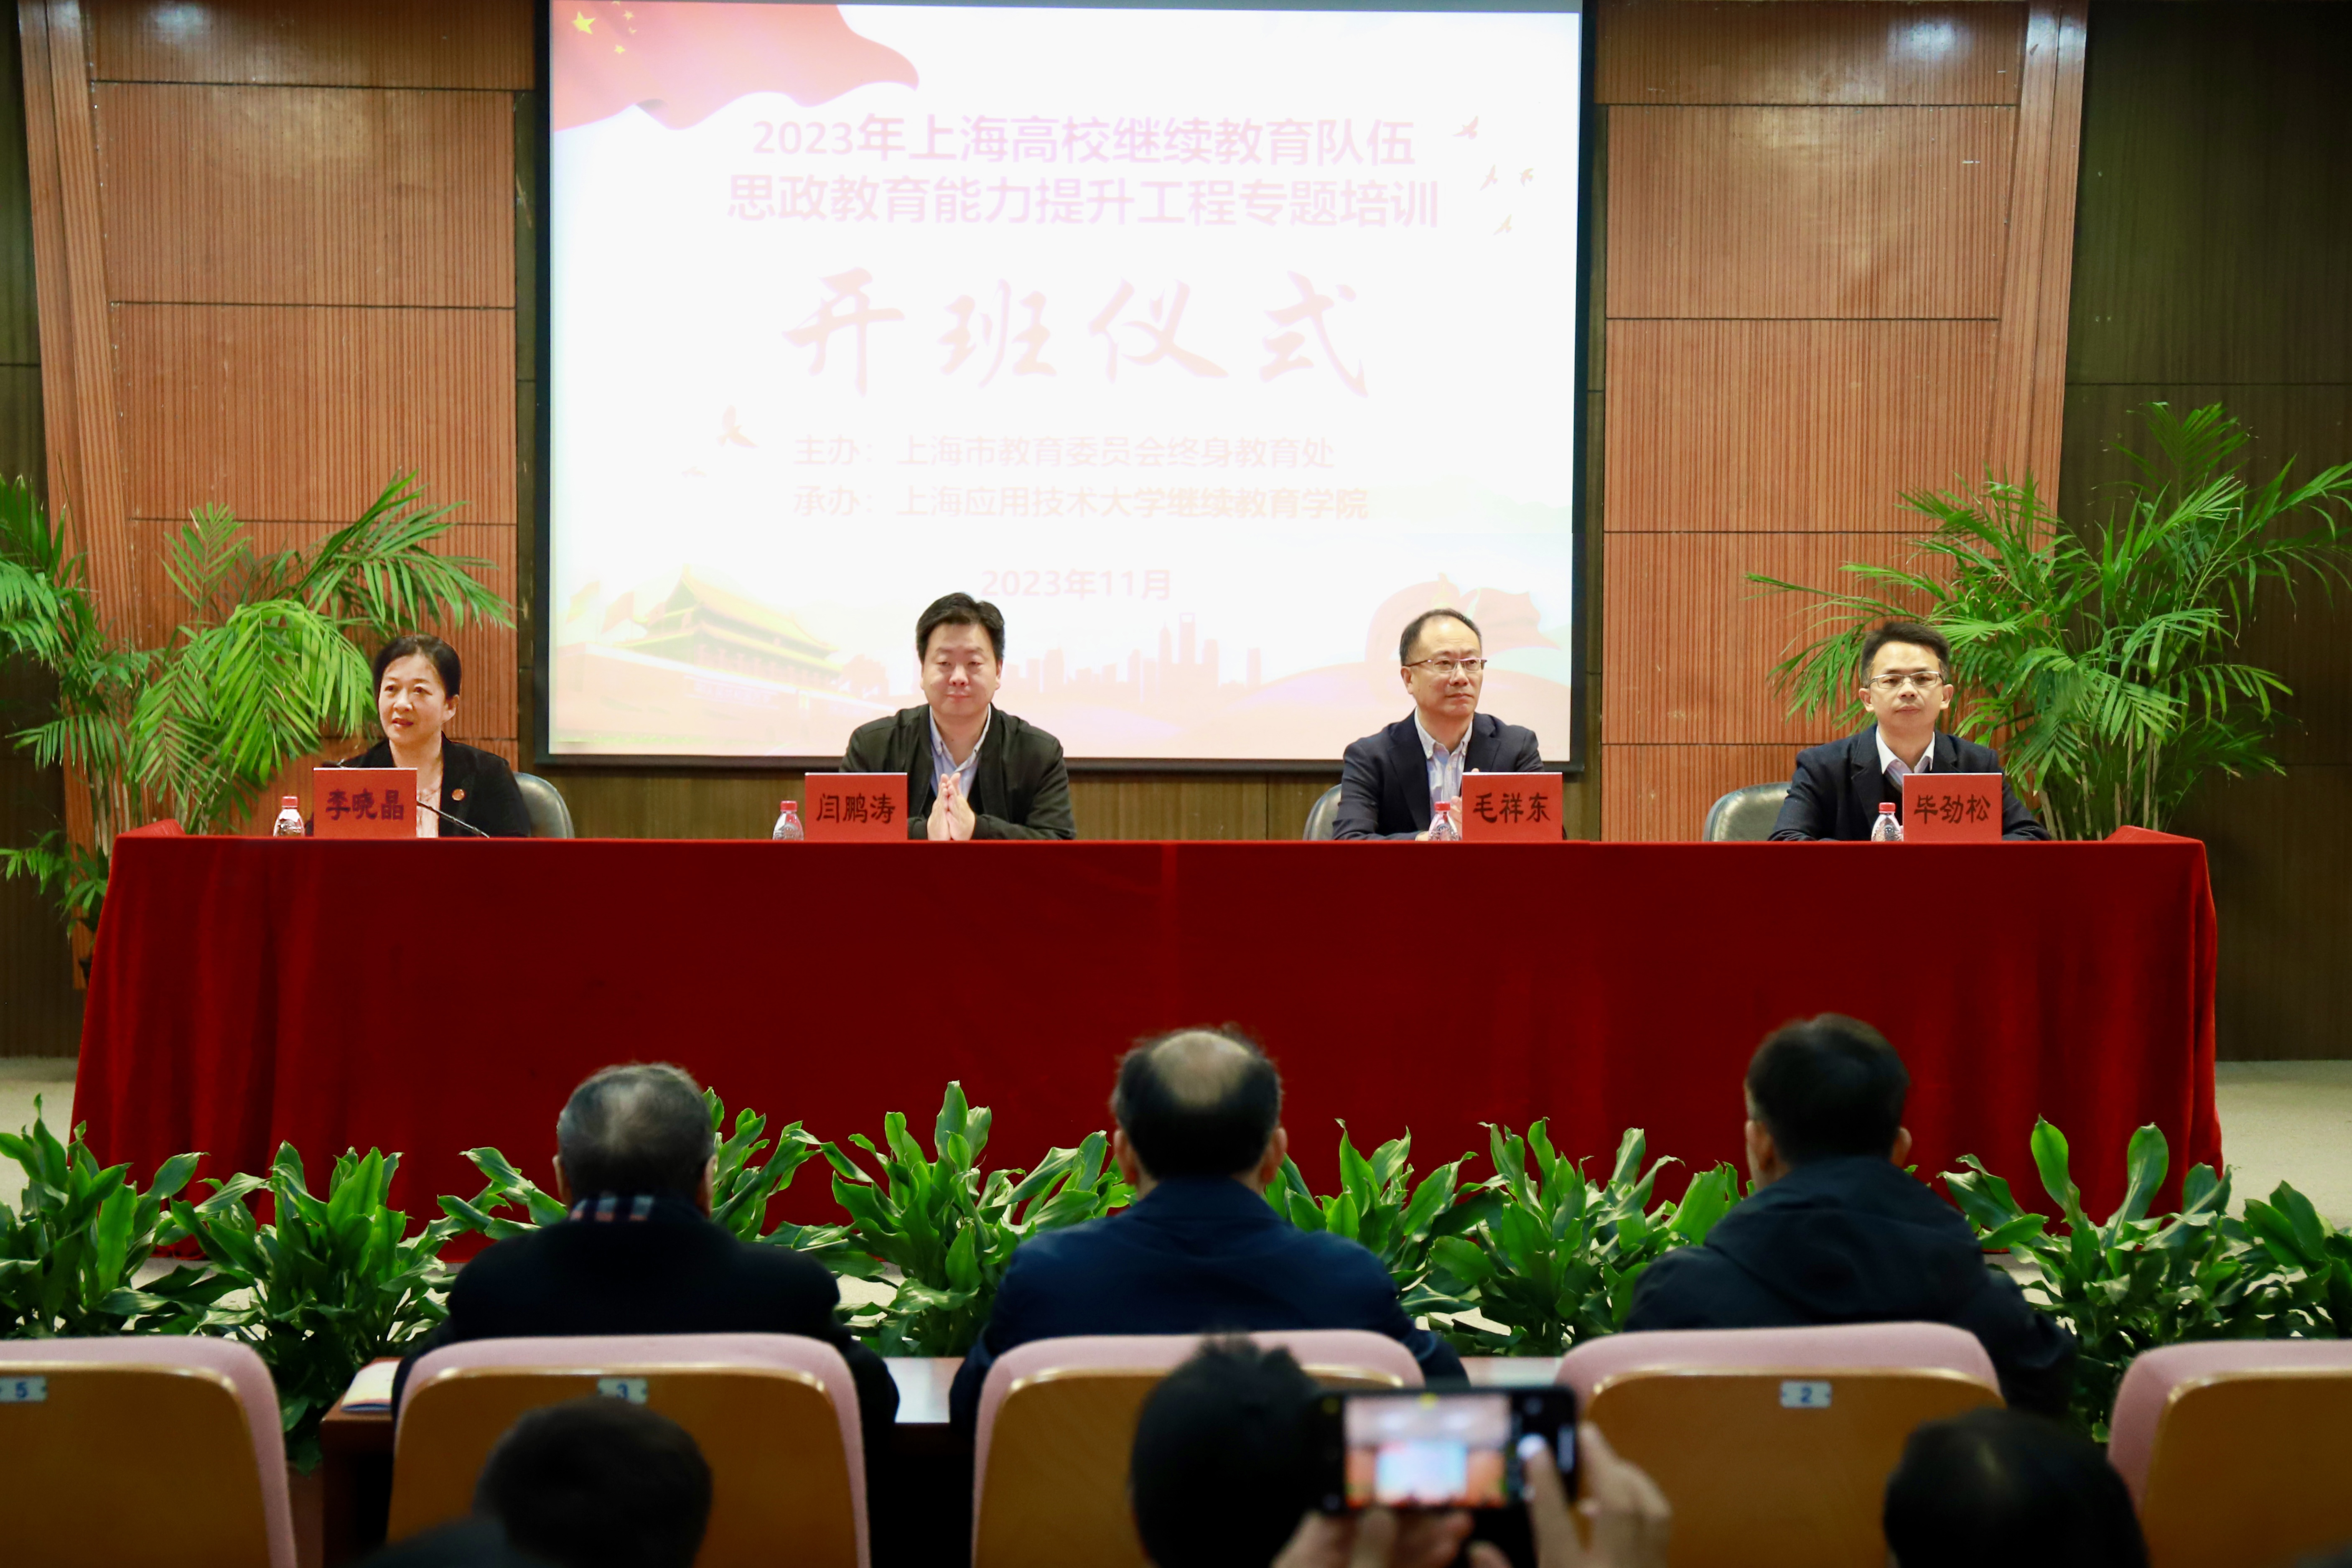 2023年上海高校继续教育队伍思政教育能力提升工程专题培训顺利举行